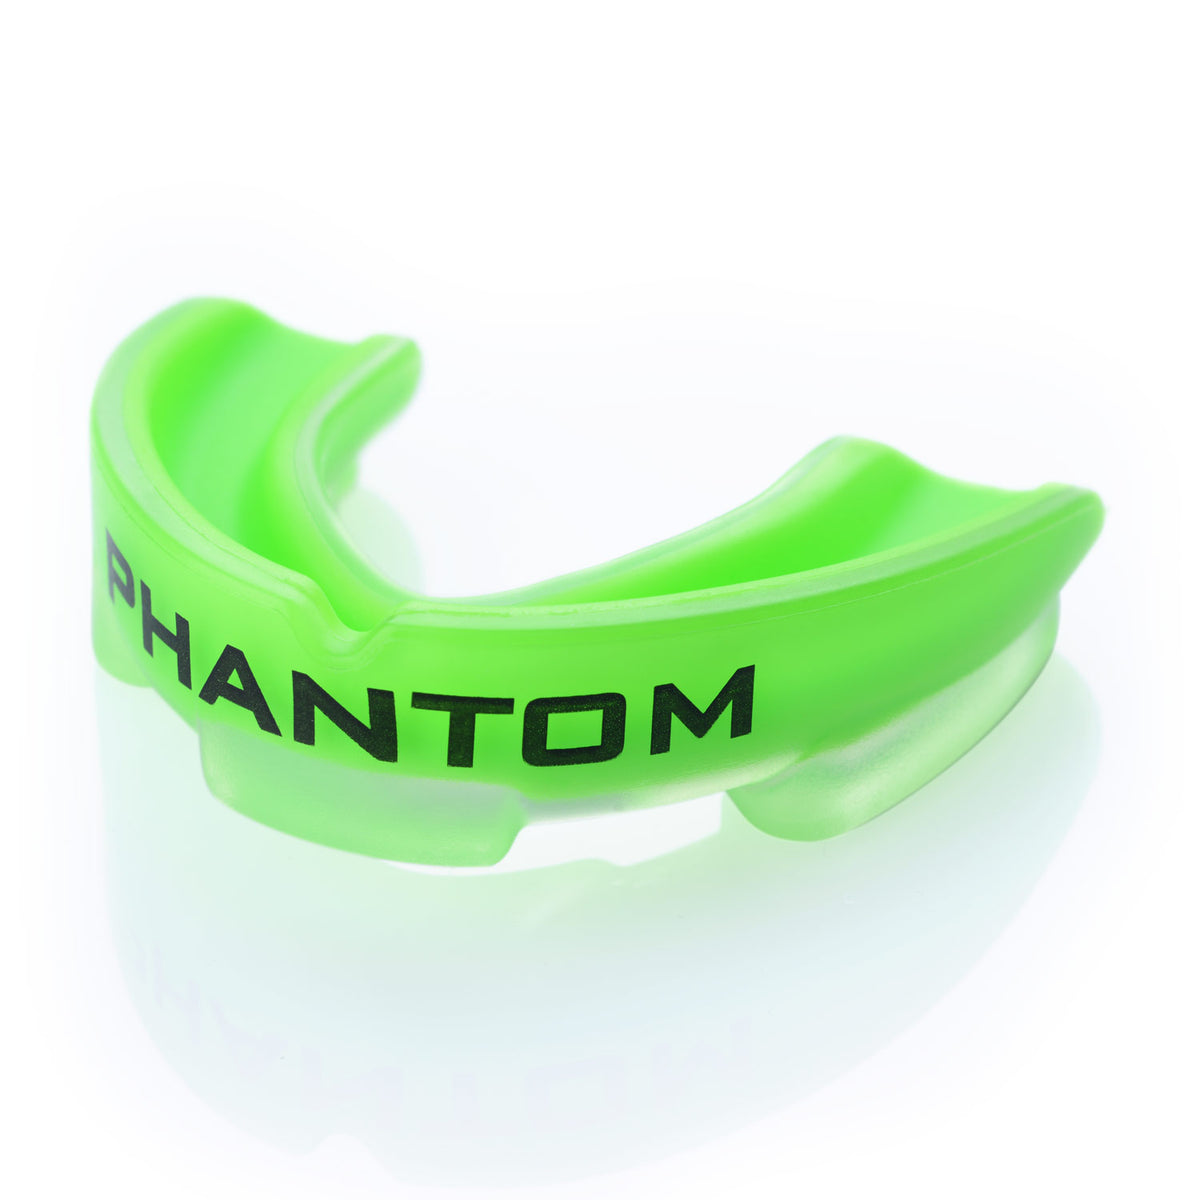 Phantom Impact Zahnschutz in Neon Grün für Kampfsport